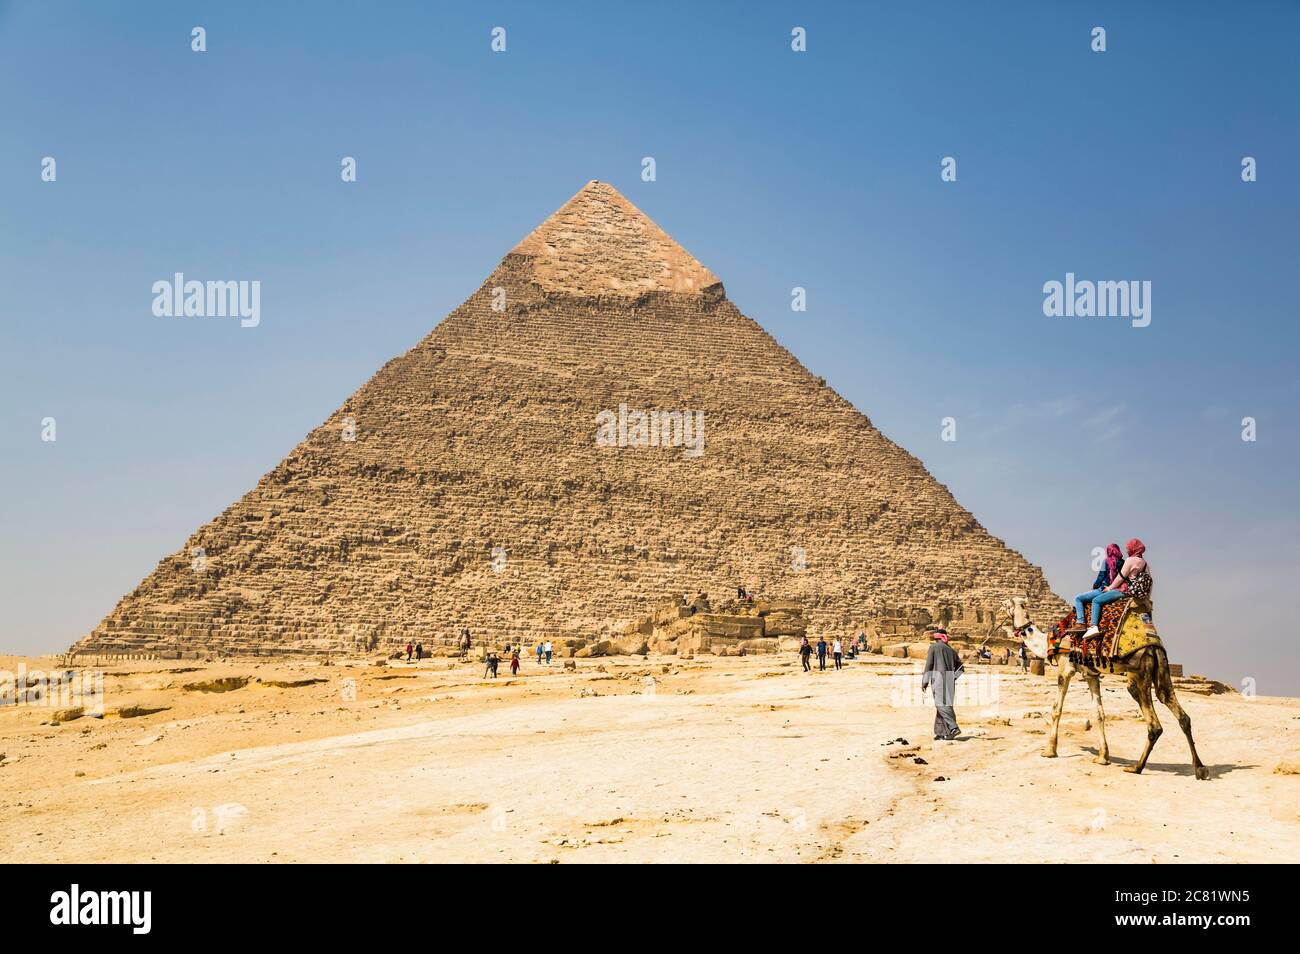 Touristes à cheval sur un chameau, Pyramide de Khafre, complexe de la pyramide de Giza, site classé au patrimoine mondial de l'UNESCO ; Giza, Egypte Banque D'Images